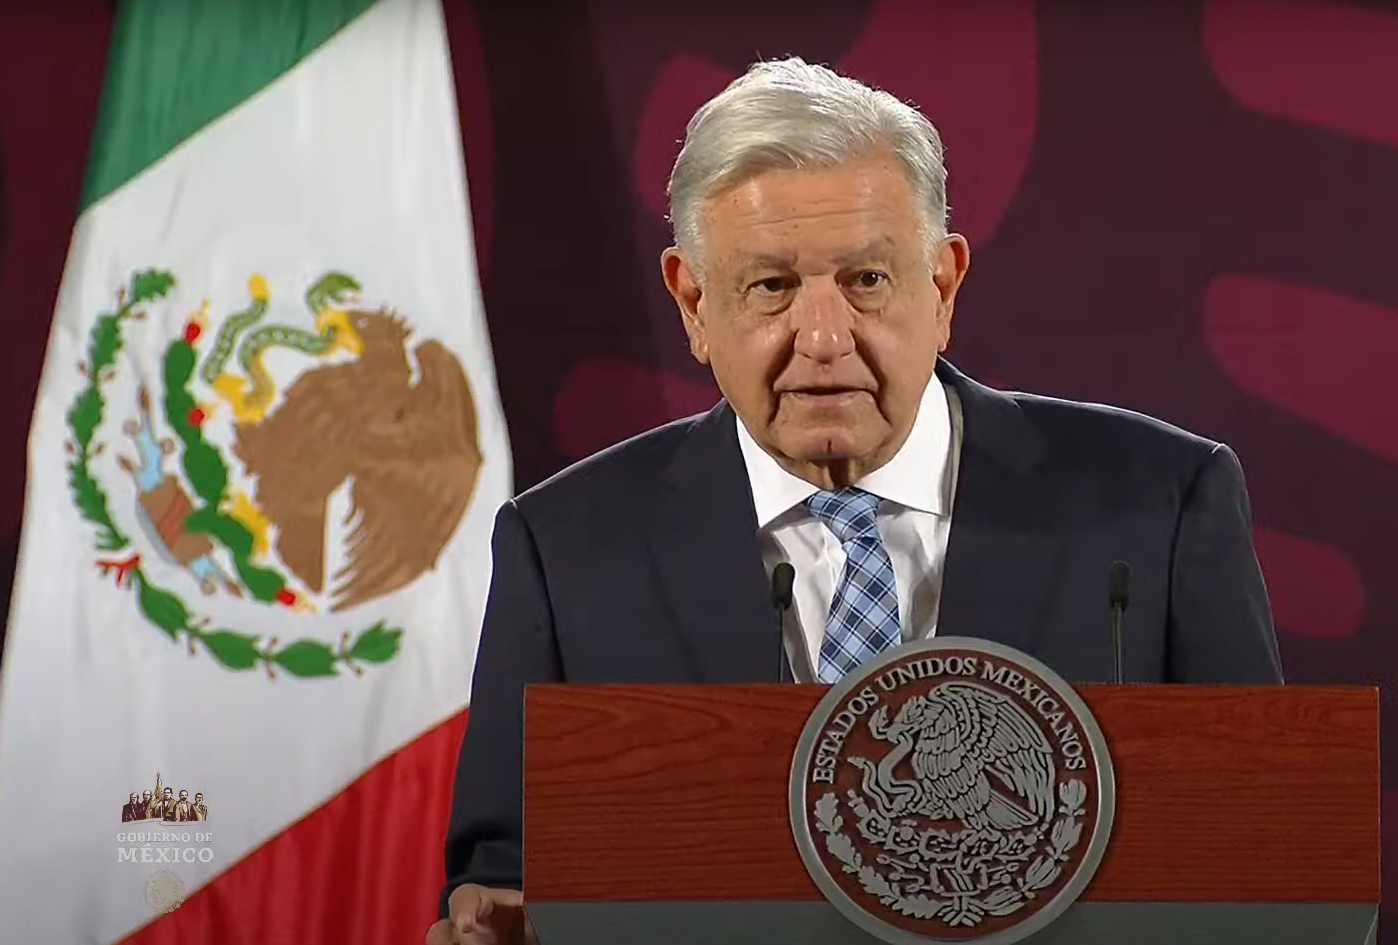 Va avanzando la recuperación de Acapulco: López Obrador